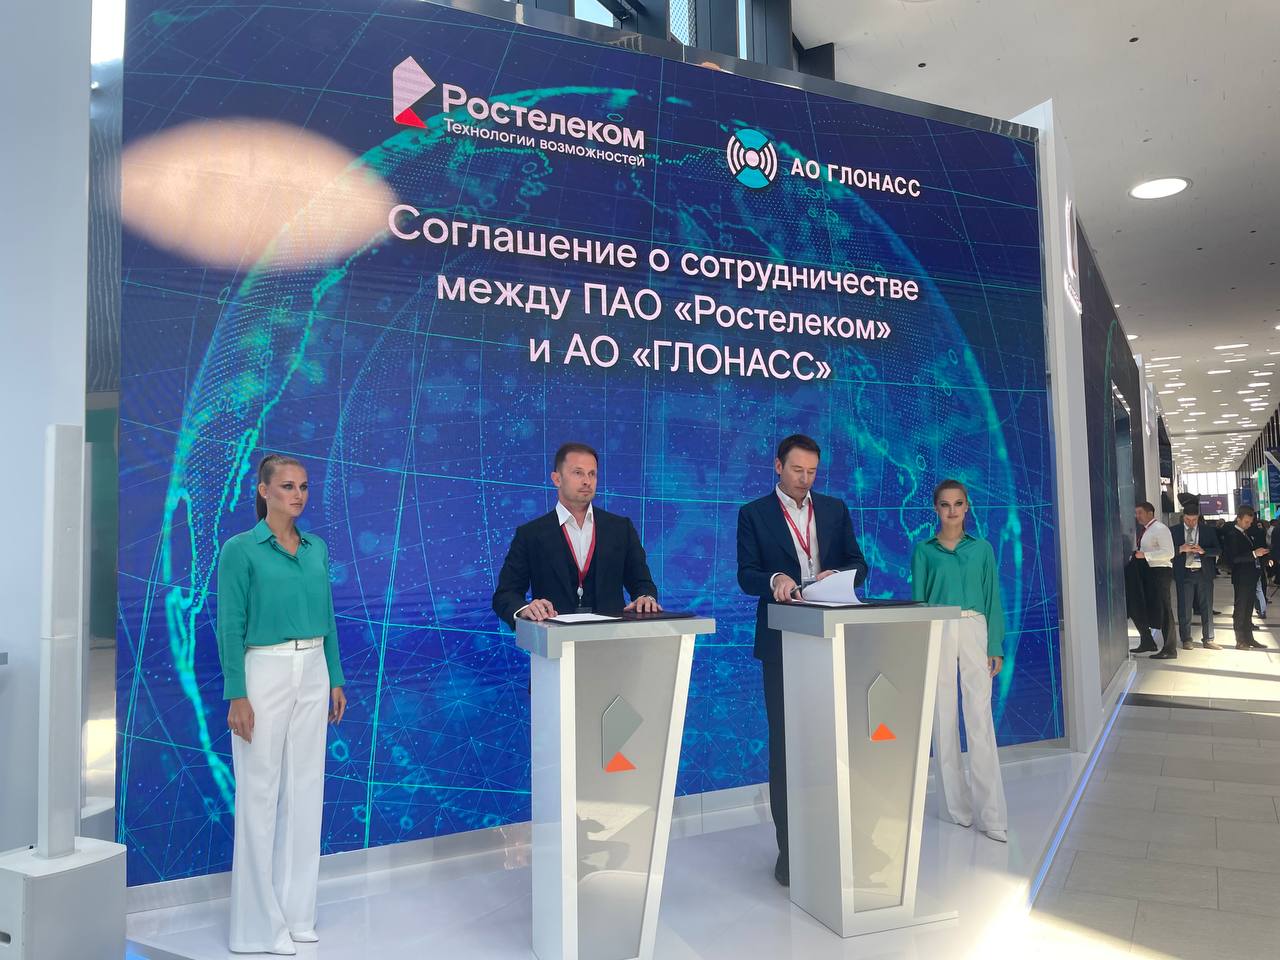 «Ростелеком» и «ГЛОНАСС» договорились о сотрудничестве в сфере цифровой трансформации отраслей экономики и регионов России